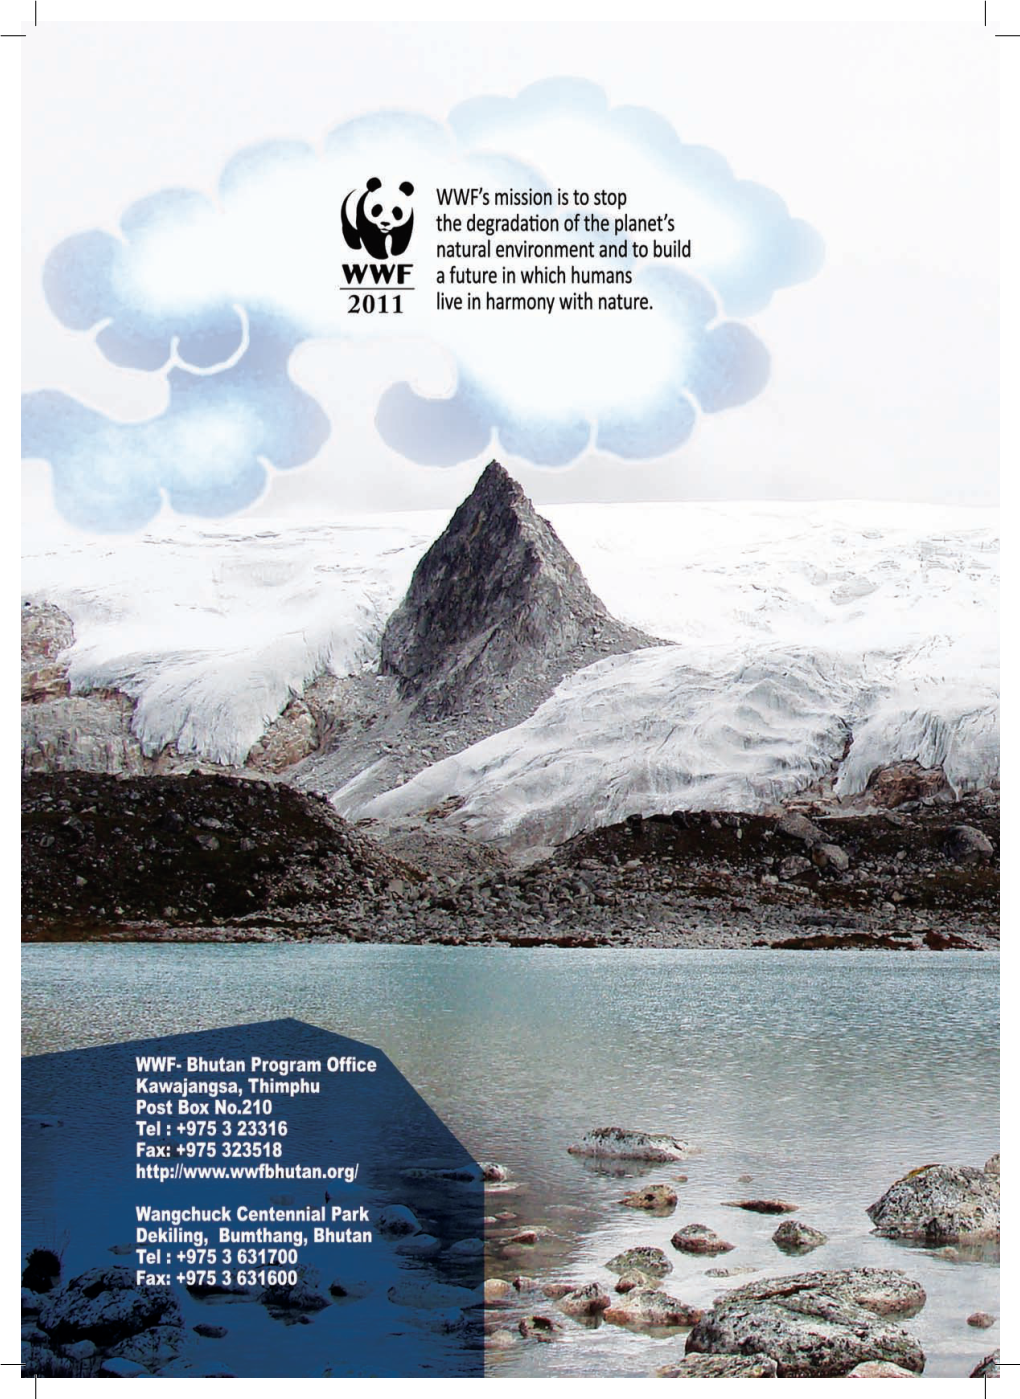 Climate Change Vulnerability Assessment for Wangchuck Centennial Park